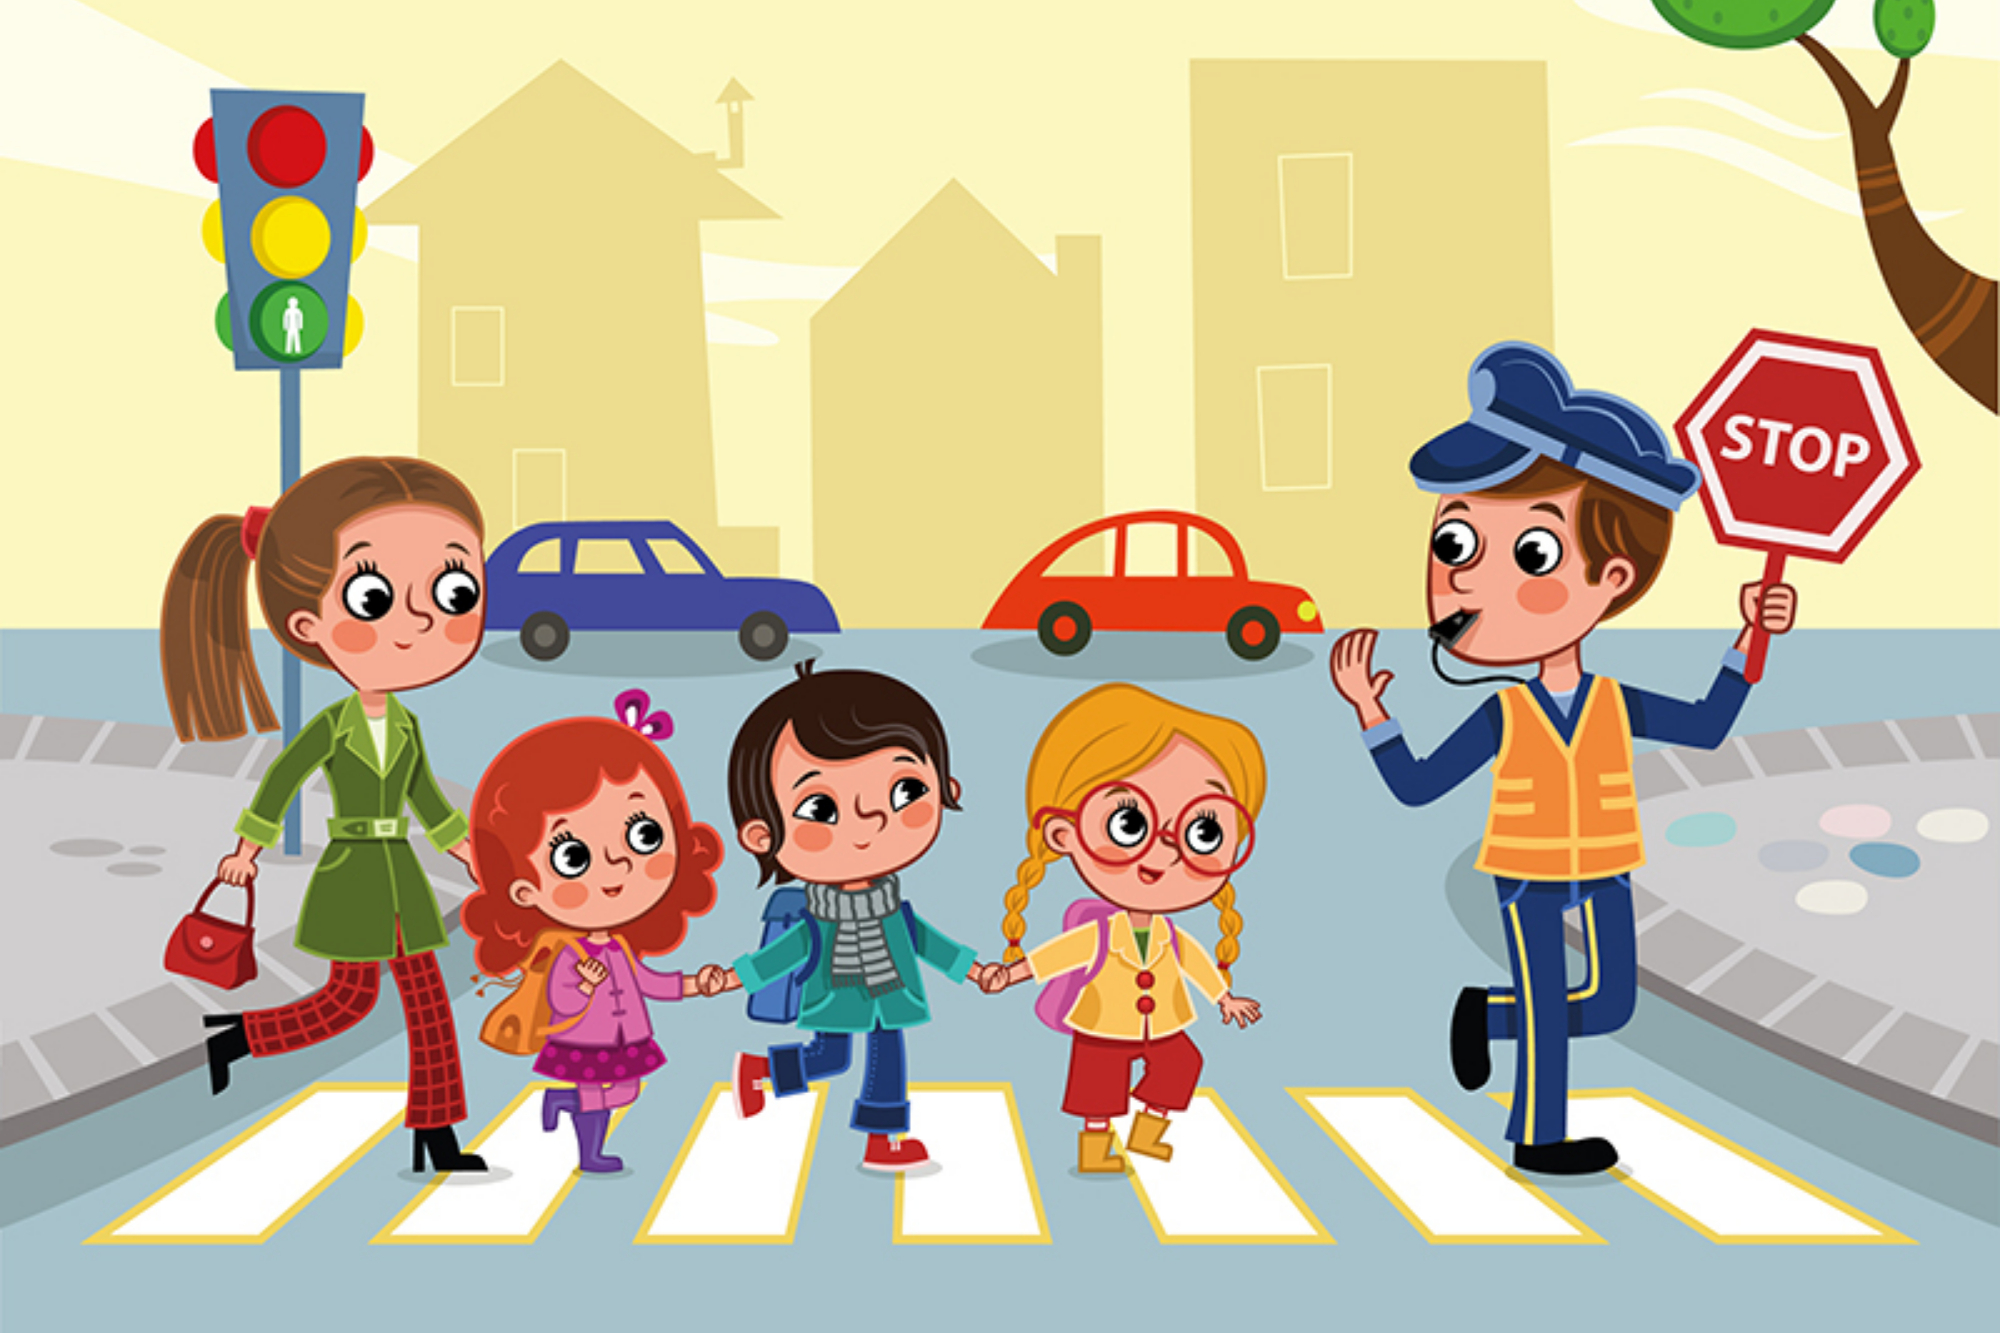 Seznamovat děti s pravidly silničního provozu je třeba už od malička. Jak na to?